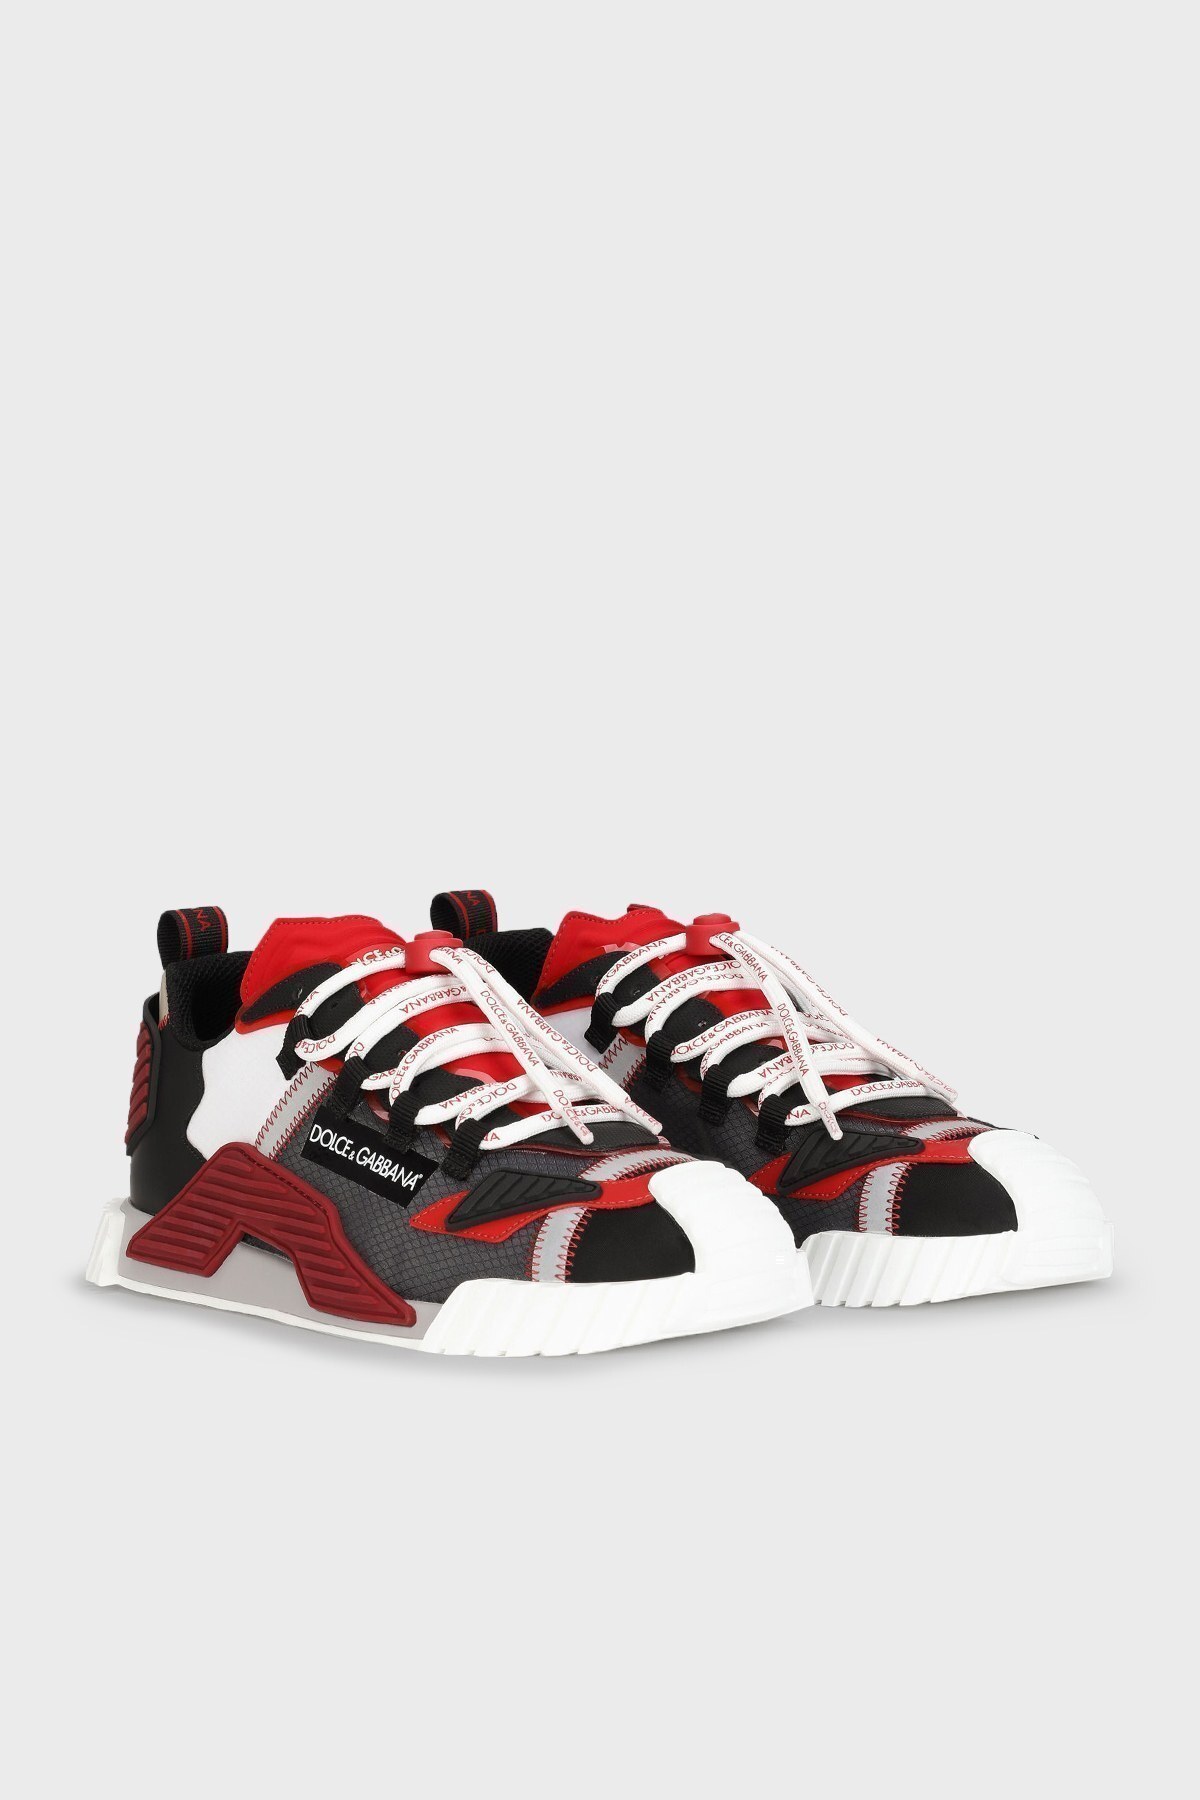 Dolce Gabbana Sneaker Erkek Ayakkabı CS1770 AJ974 8B189 KIRMIZI-SİYAH